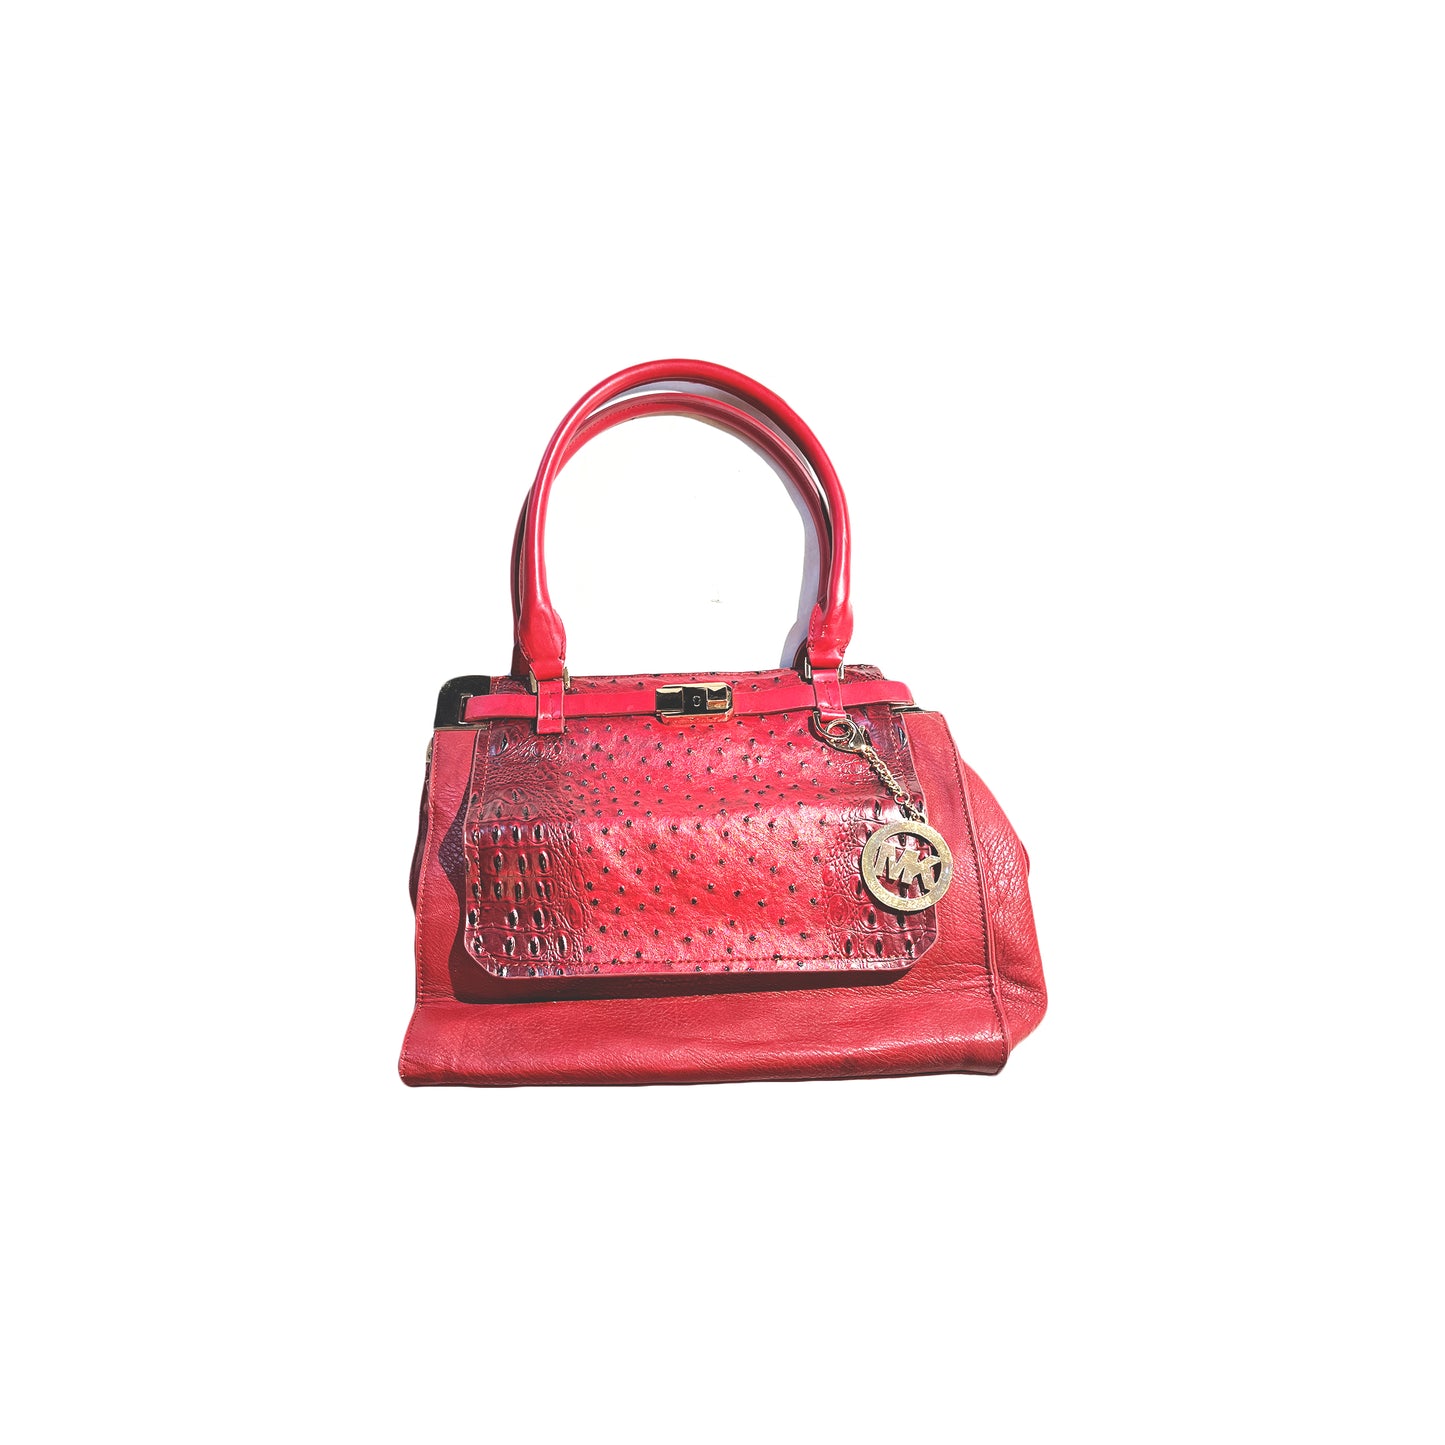 Buy MICHAEL KORS Women Red Shoulder Bag Bright Red Online  Best Price in  India  Flipkartcom